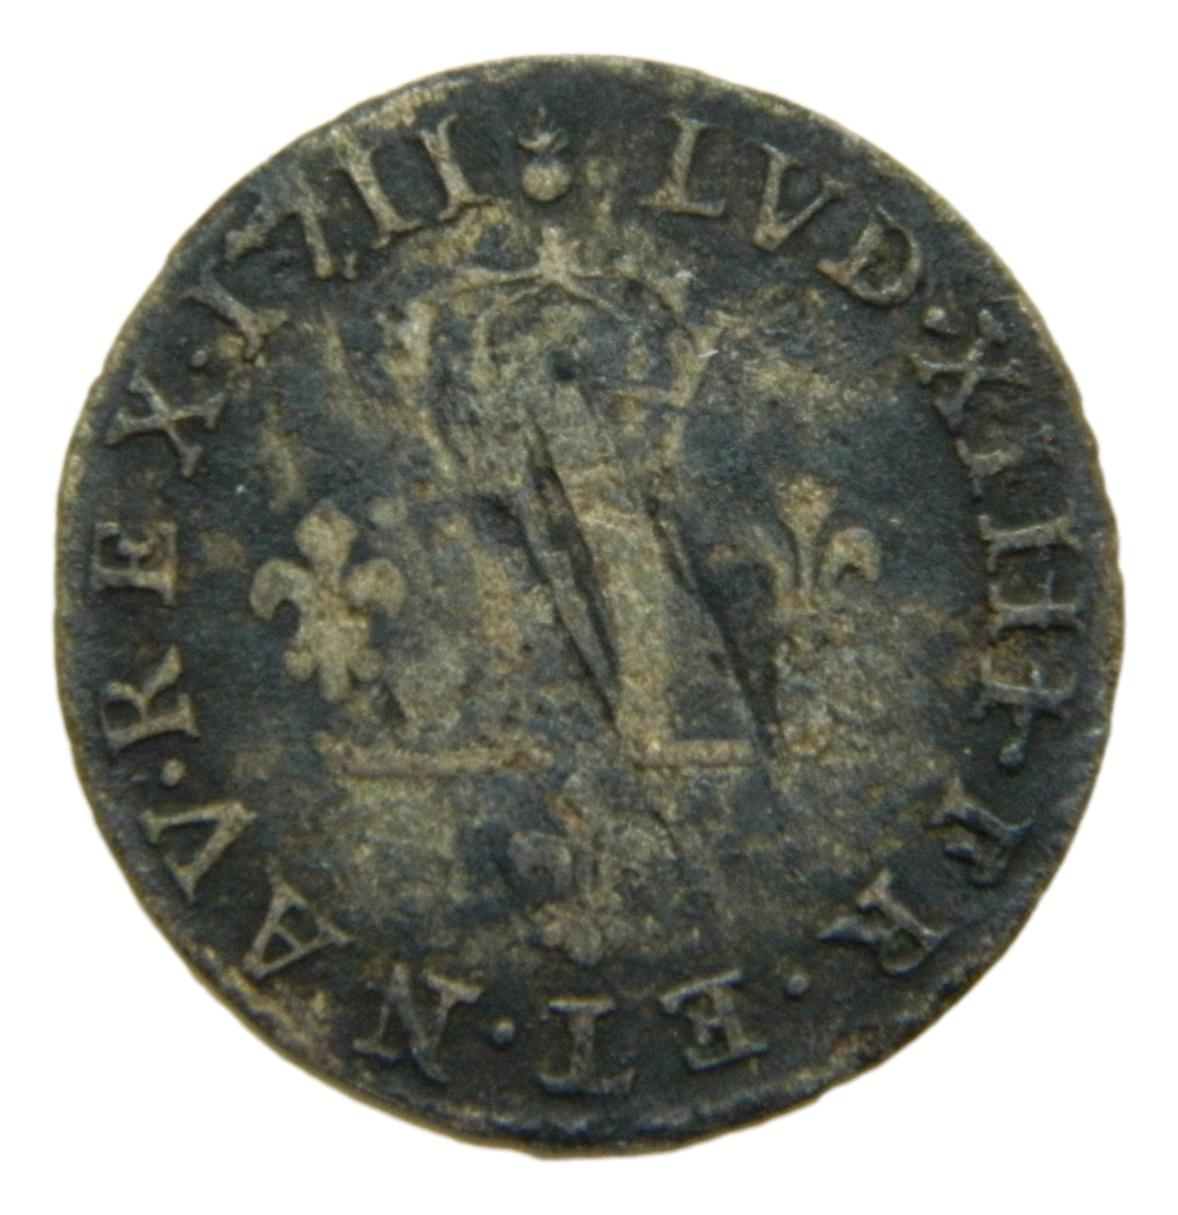 1711 AA - FRANCIA - 15 DENIERS - LOUIS XIV - BILLON - BC - S9/421